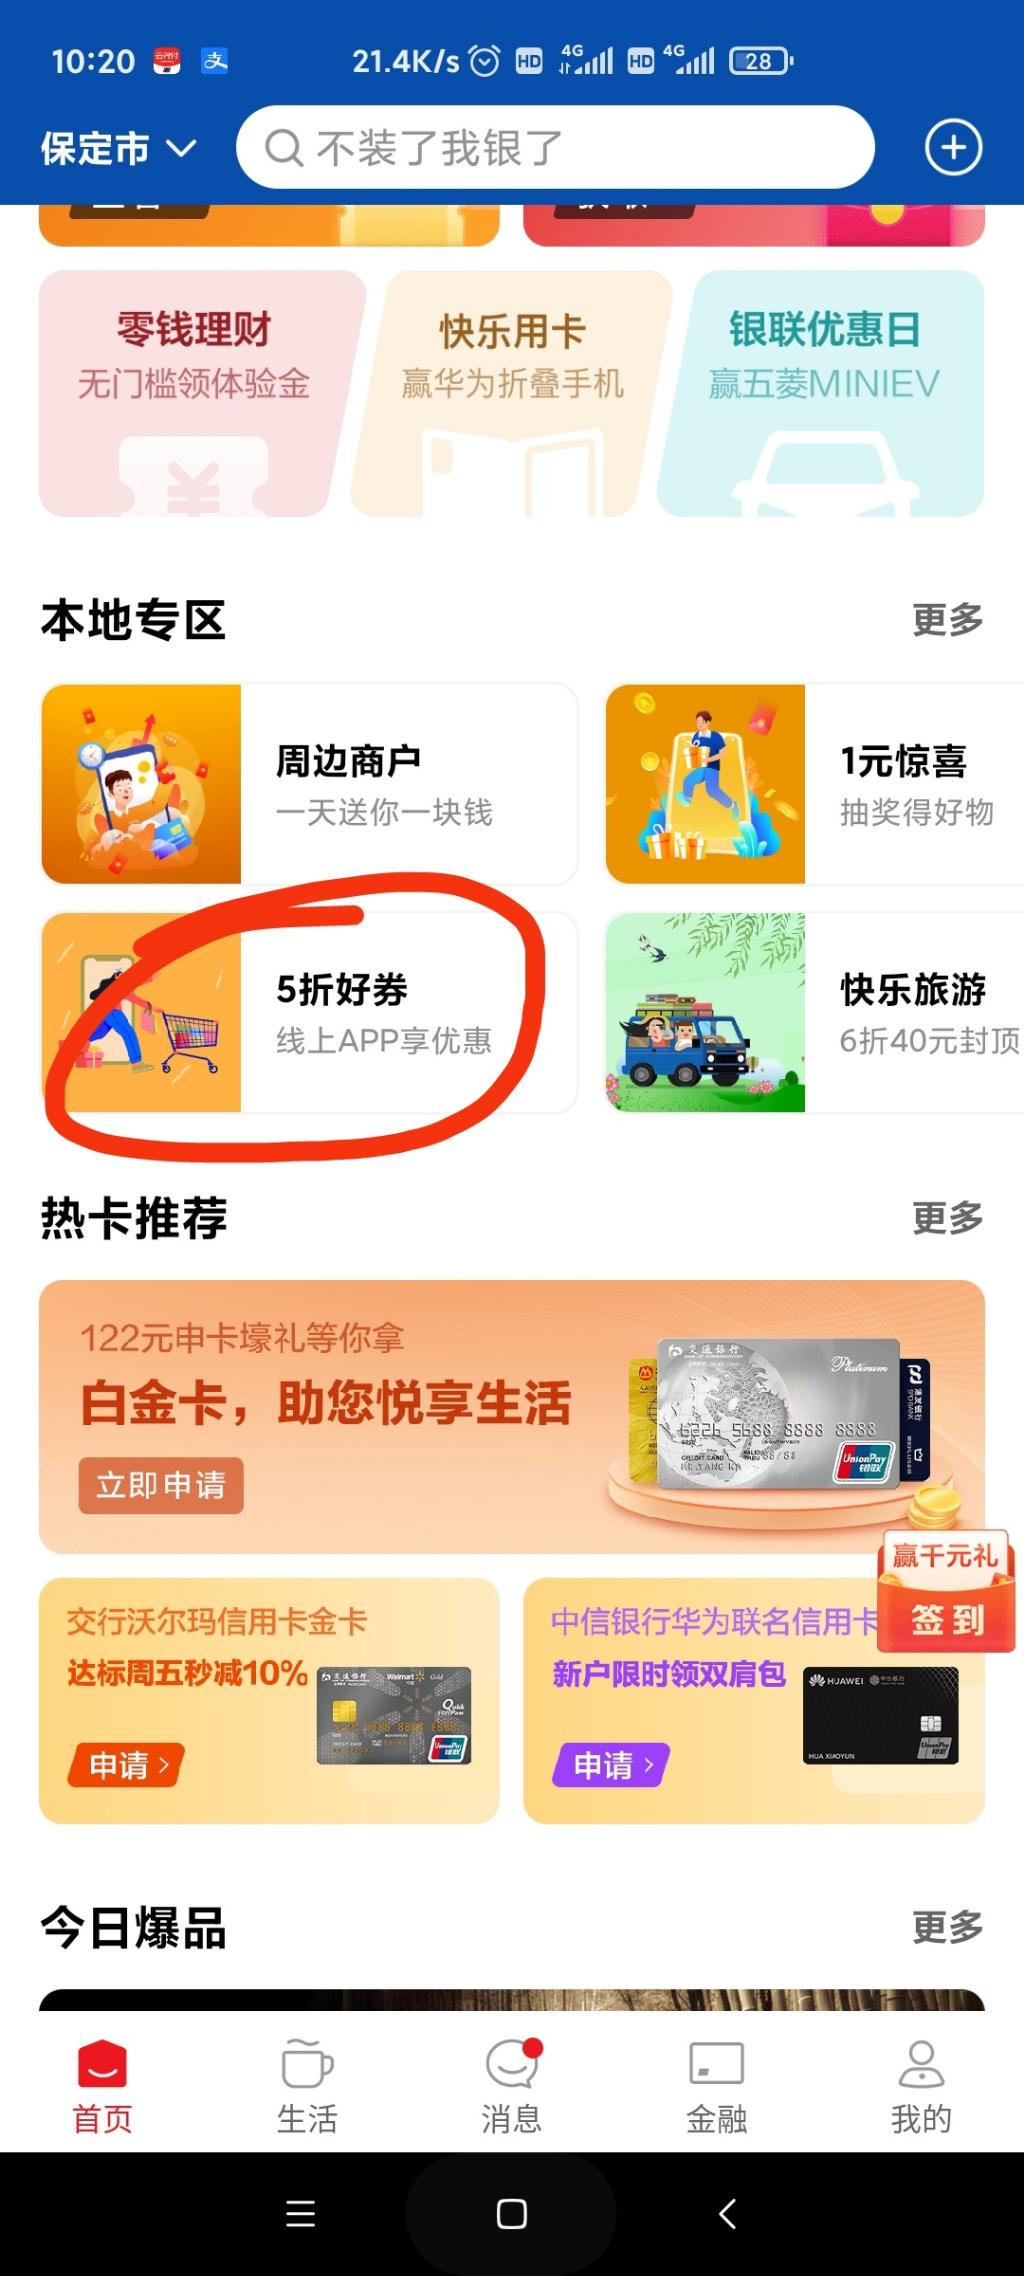 5.5买10e卡-限河北-一周一次-惠小助(52huixz.com)